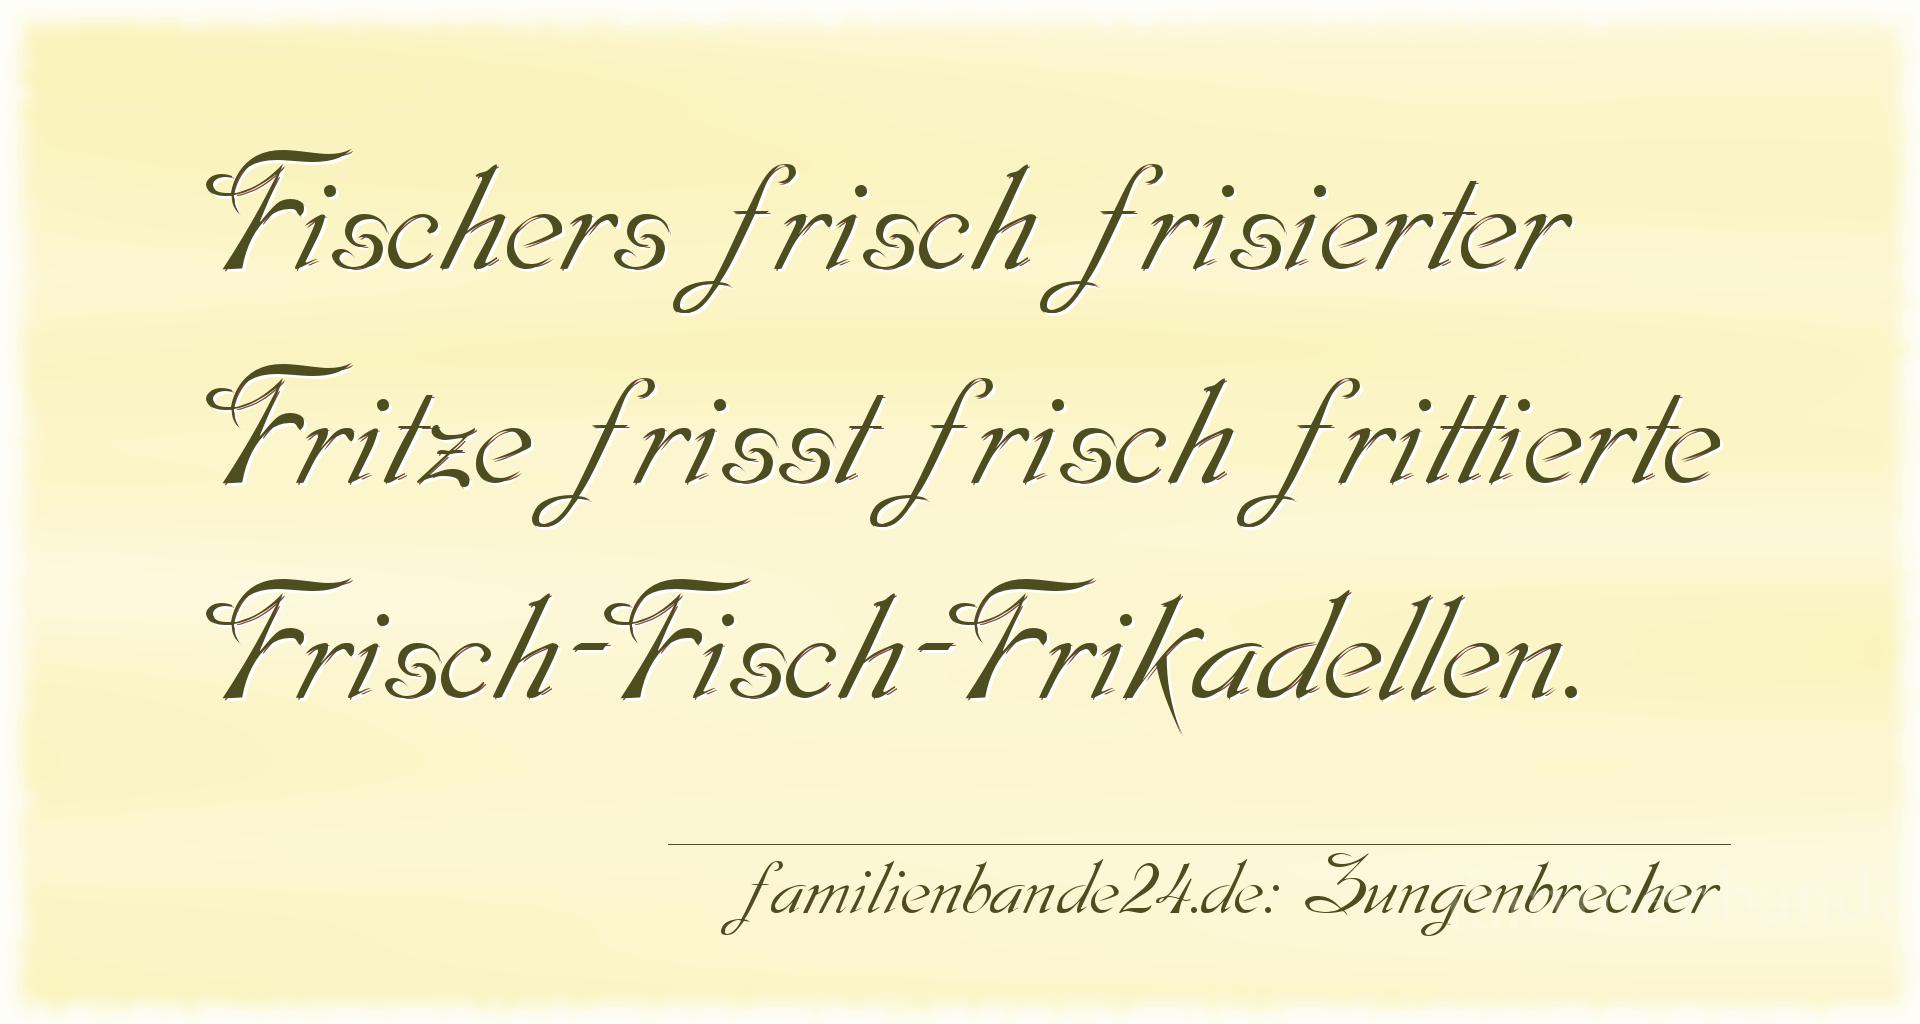 Zungenbrecher Nr. 702: Fischers frisch frisierter Fritze frißt frisch frittierte [...]